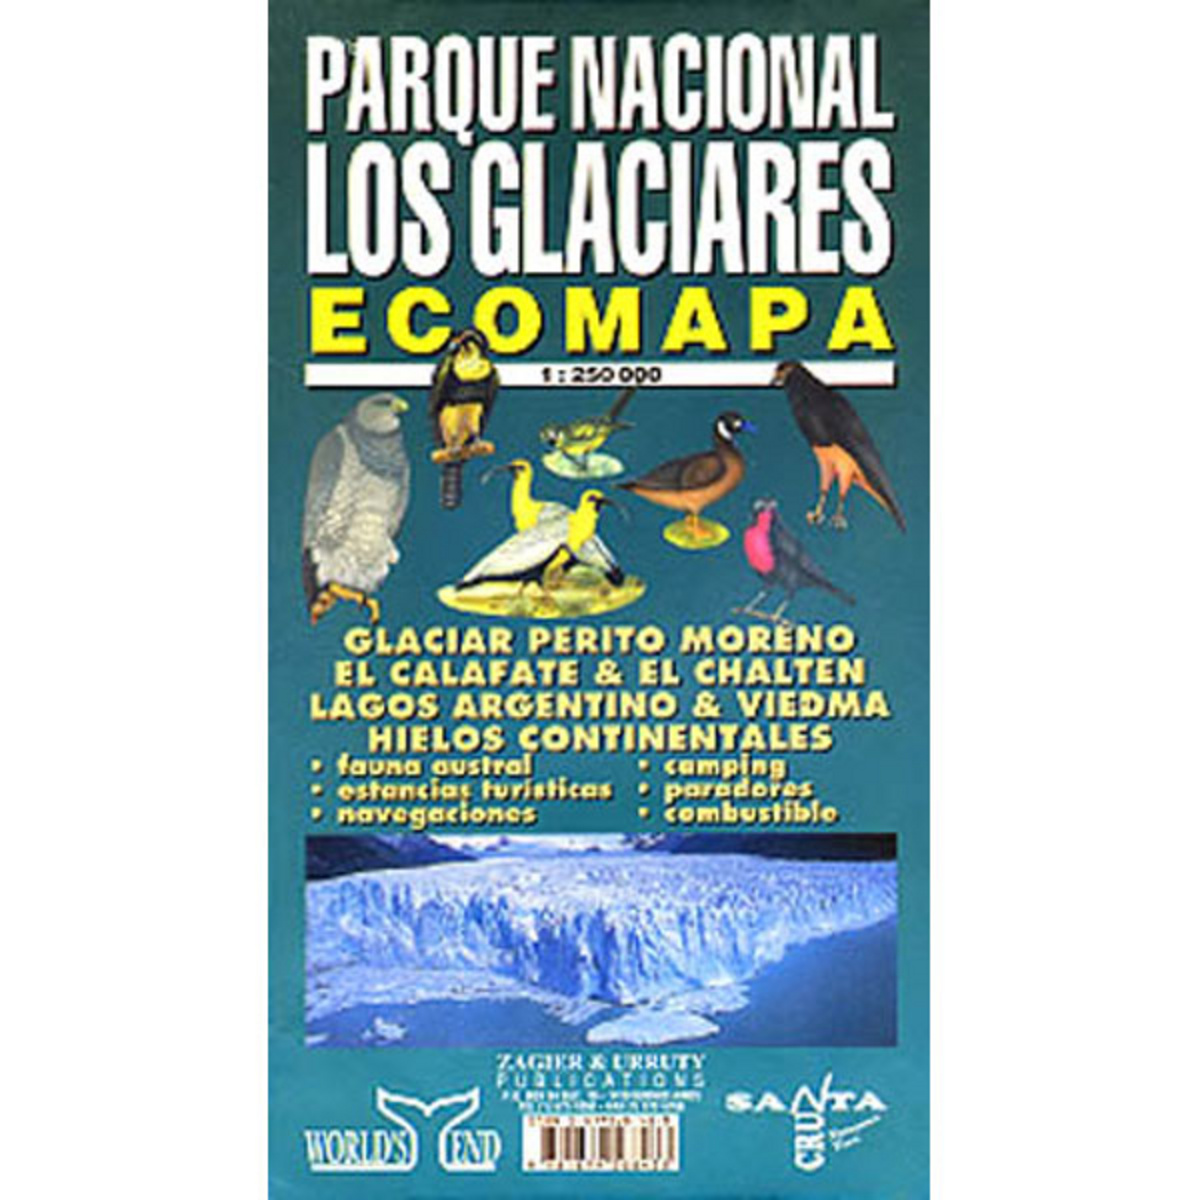 Image of Zagier&Urruty Parque Nacional Los Glaciares Ecomap 250T